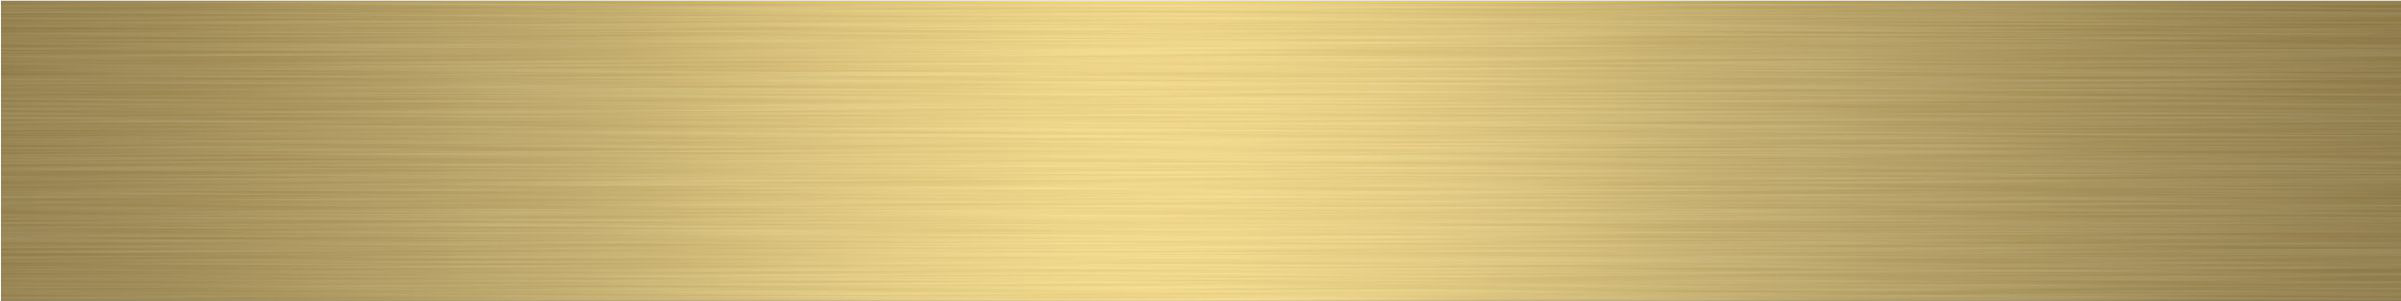 Gouden naamplaat PNG Transparant Beeld